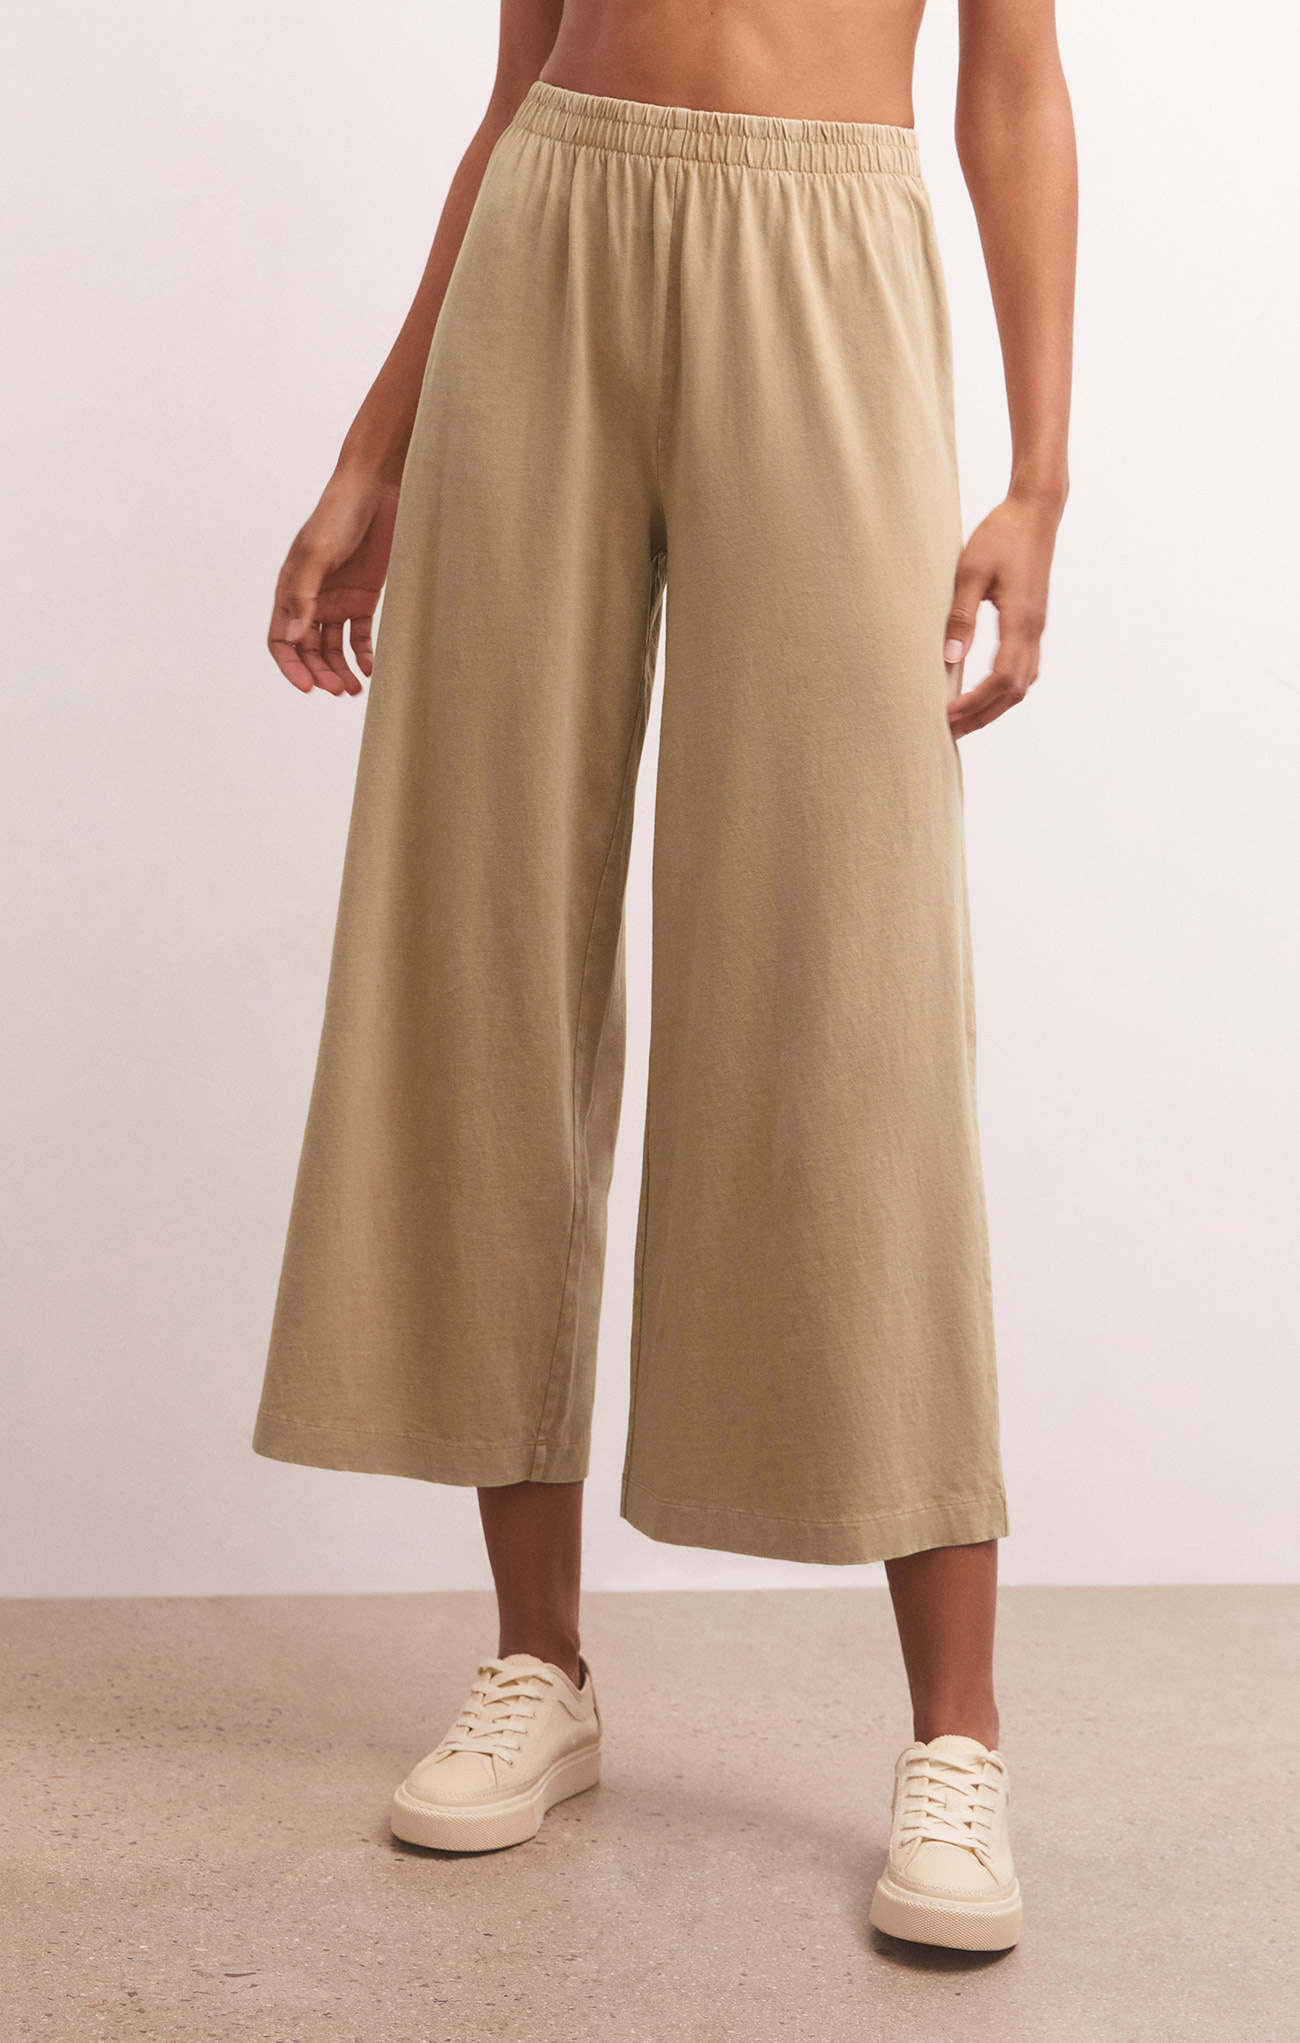 Cotton culotte pants, P12229